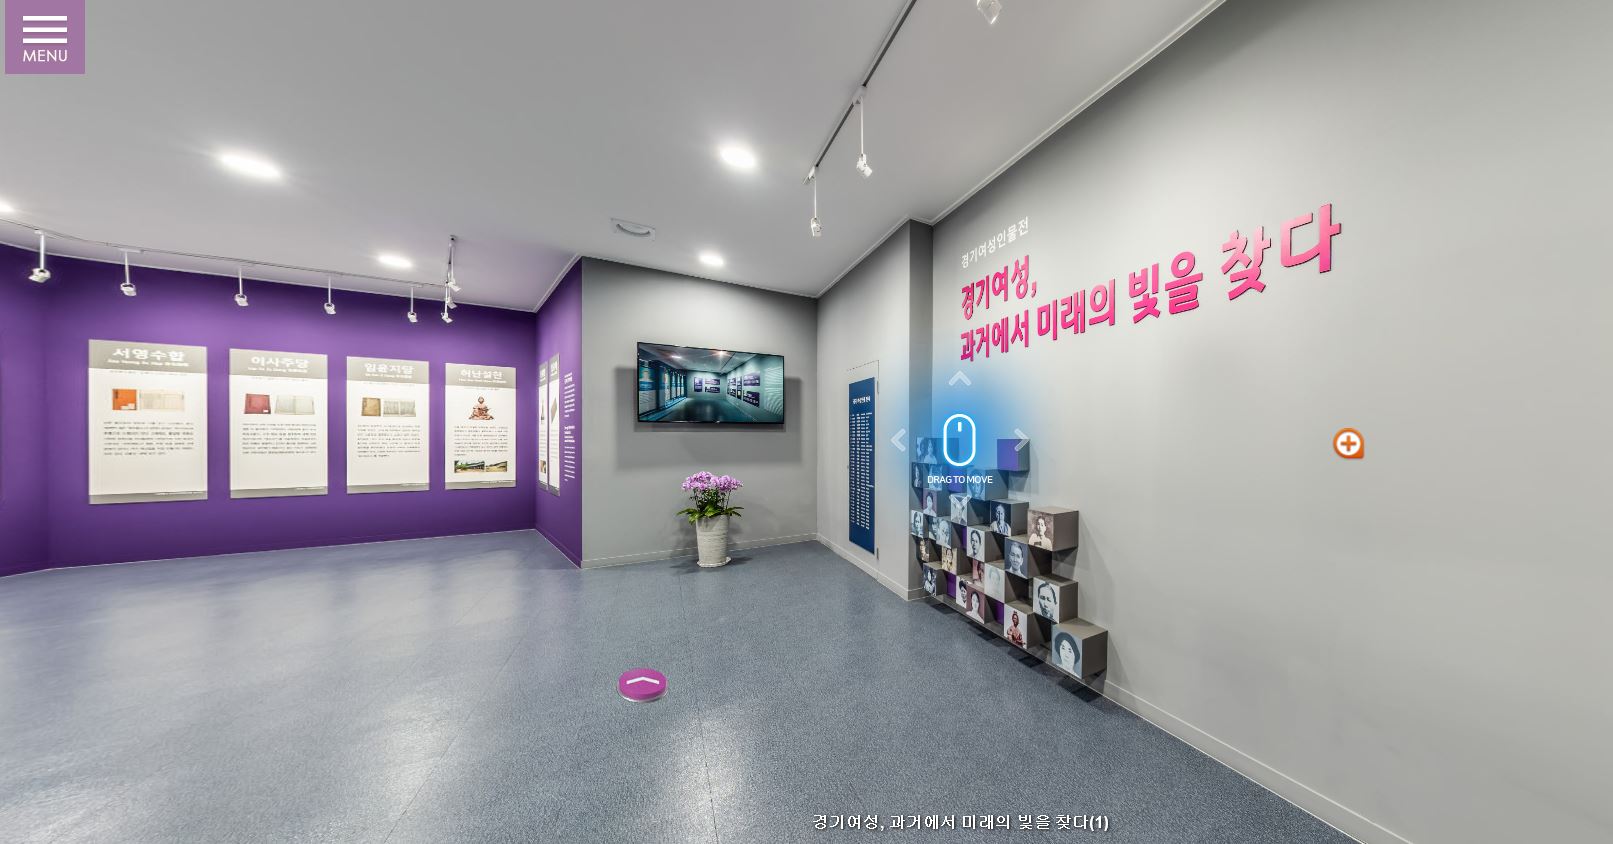 경기도 여성인물전시관은 경기도 여성비전센터 누리집을 통해 VR로 관람이 가능하다.